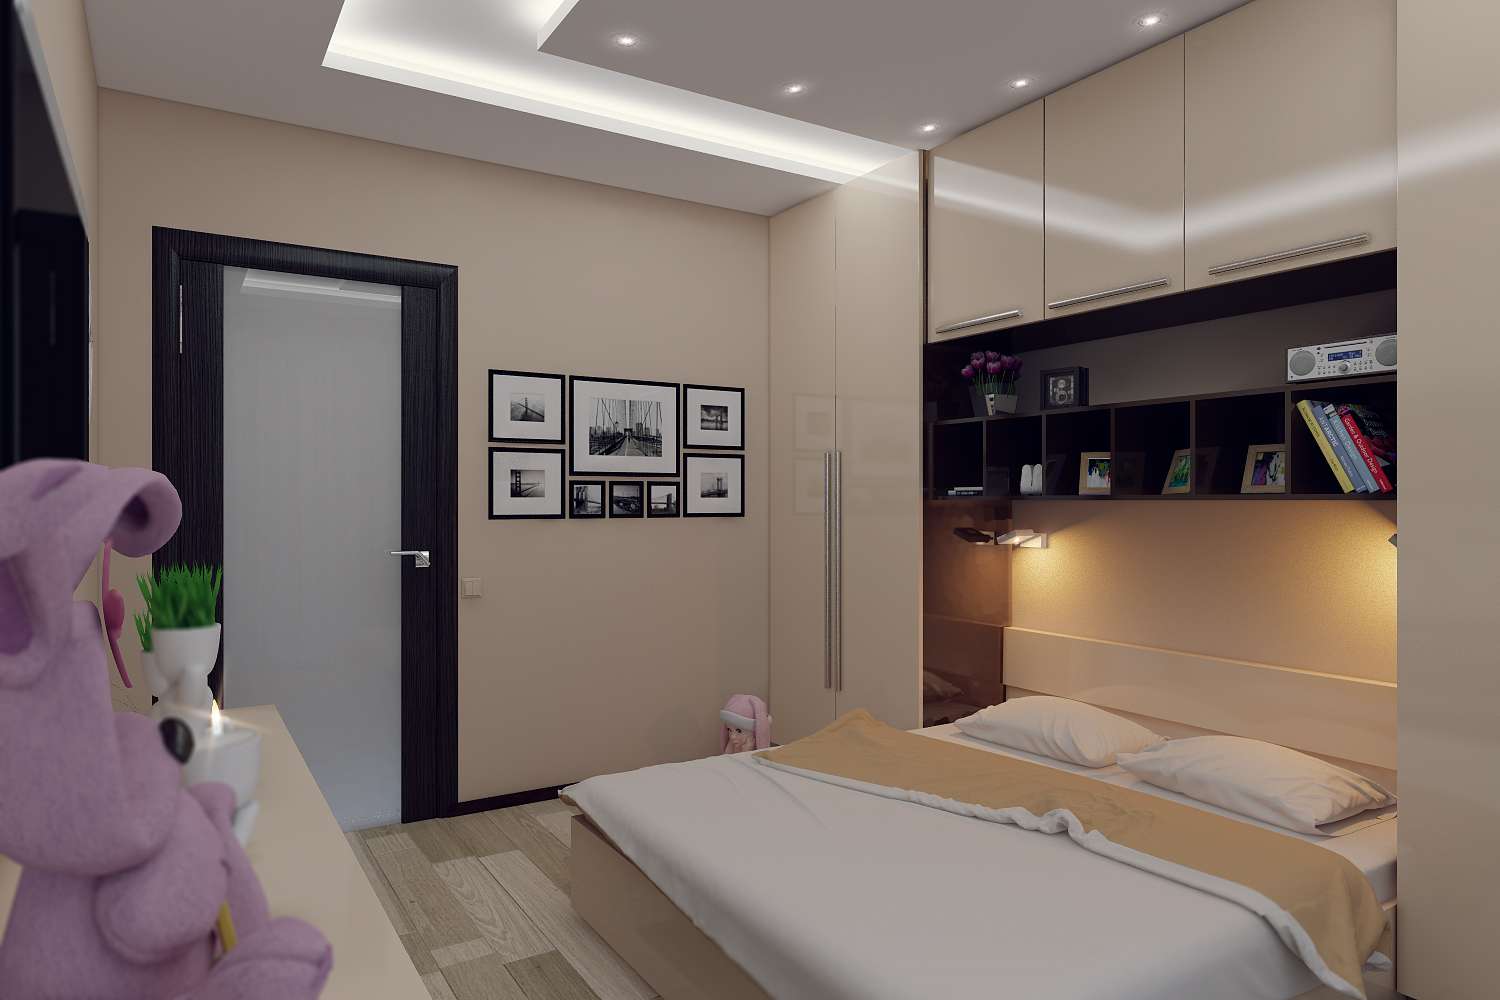 Оформление интерьера спальни площадью 6 кв. метров: 70+ фото примеров от дизайнеров